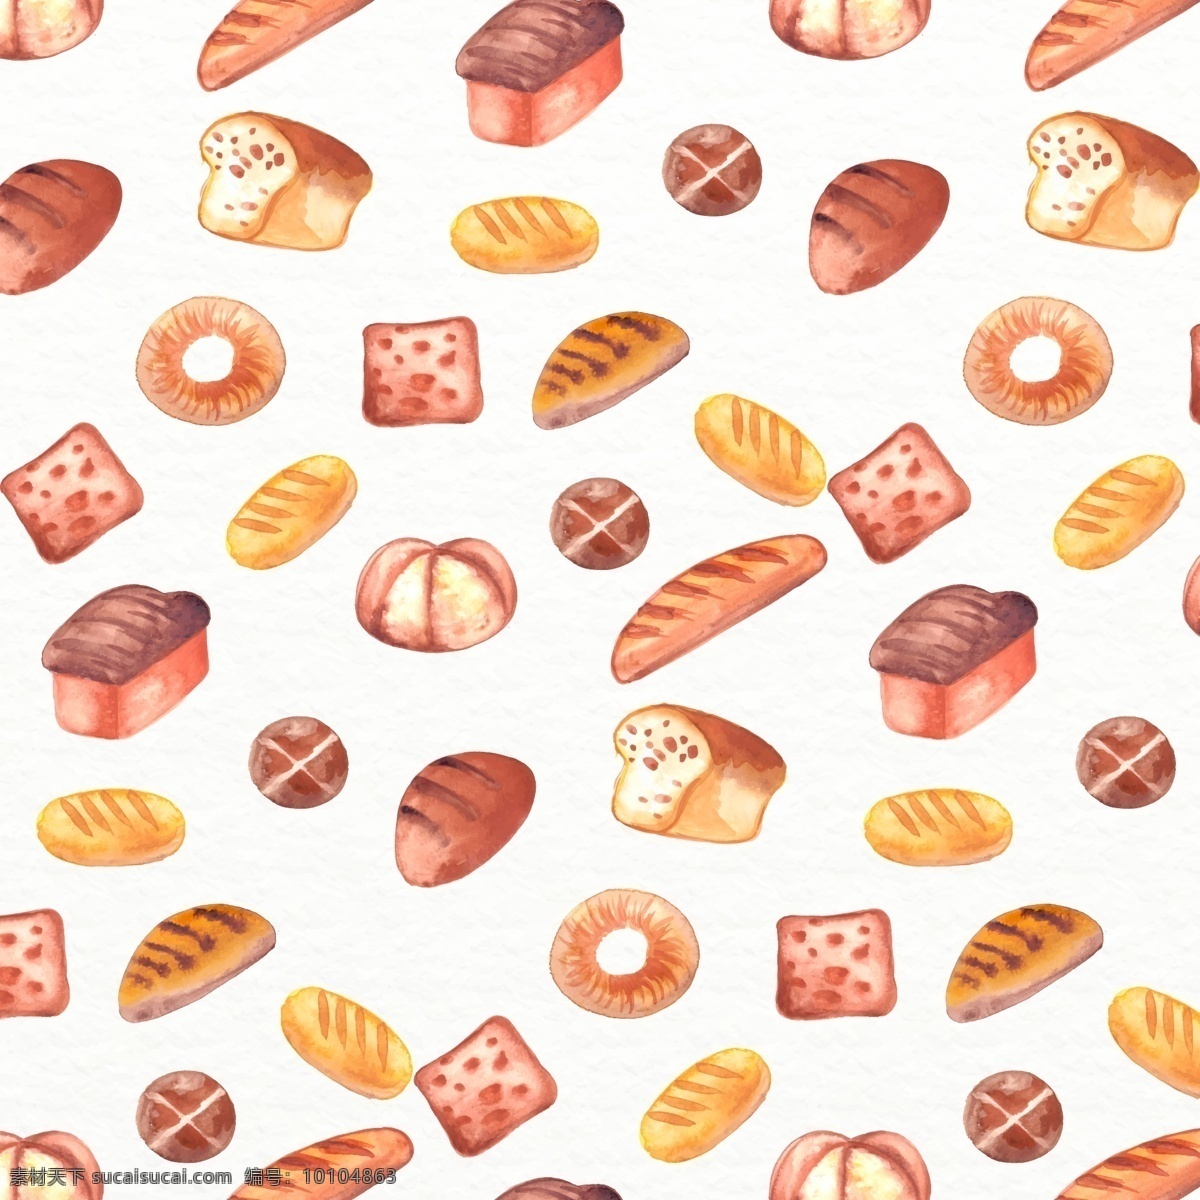 水彩 绘 面包 无缝 背景 矢量图 甜甜圈 长棍面包 烘培食品 无缝背景 底纹边框 背景底纹